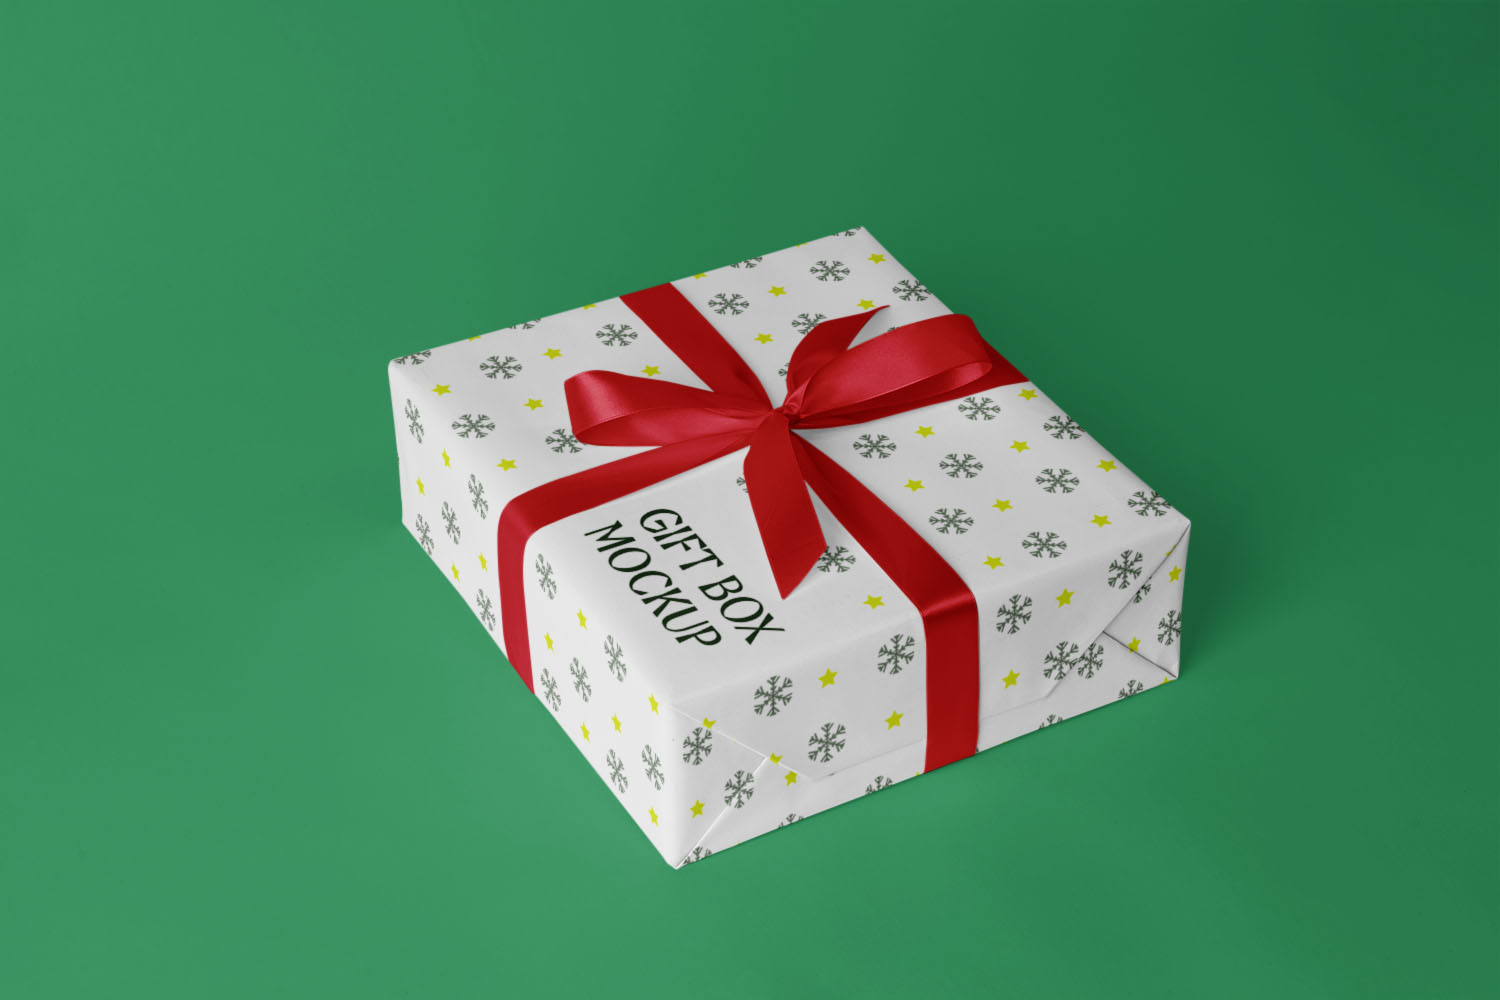 Gift Box Free Mockup